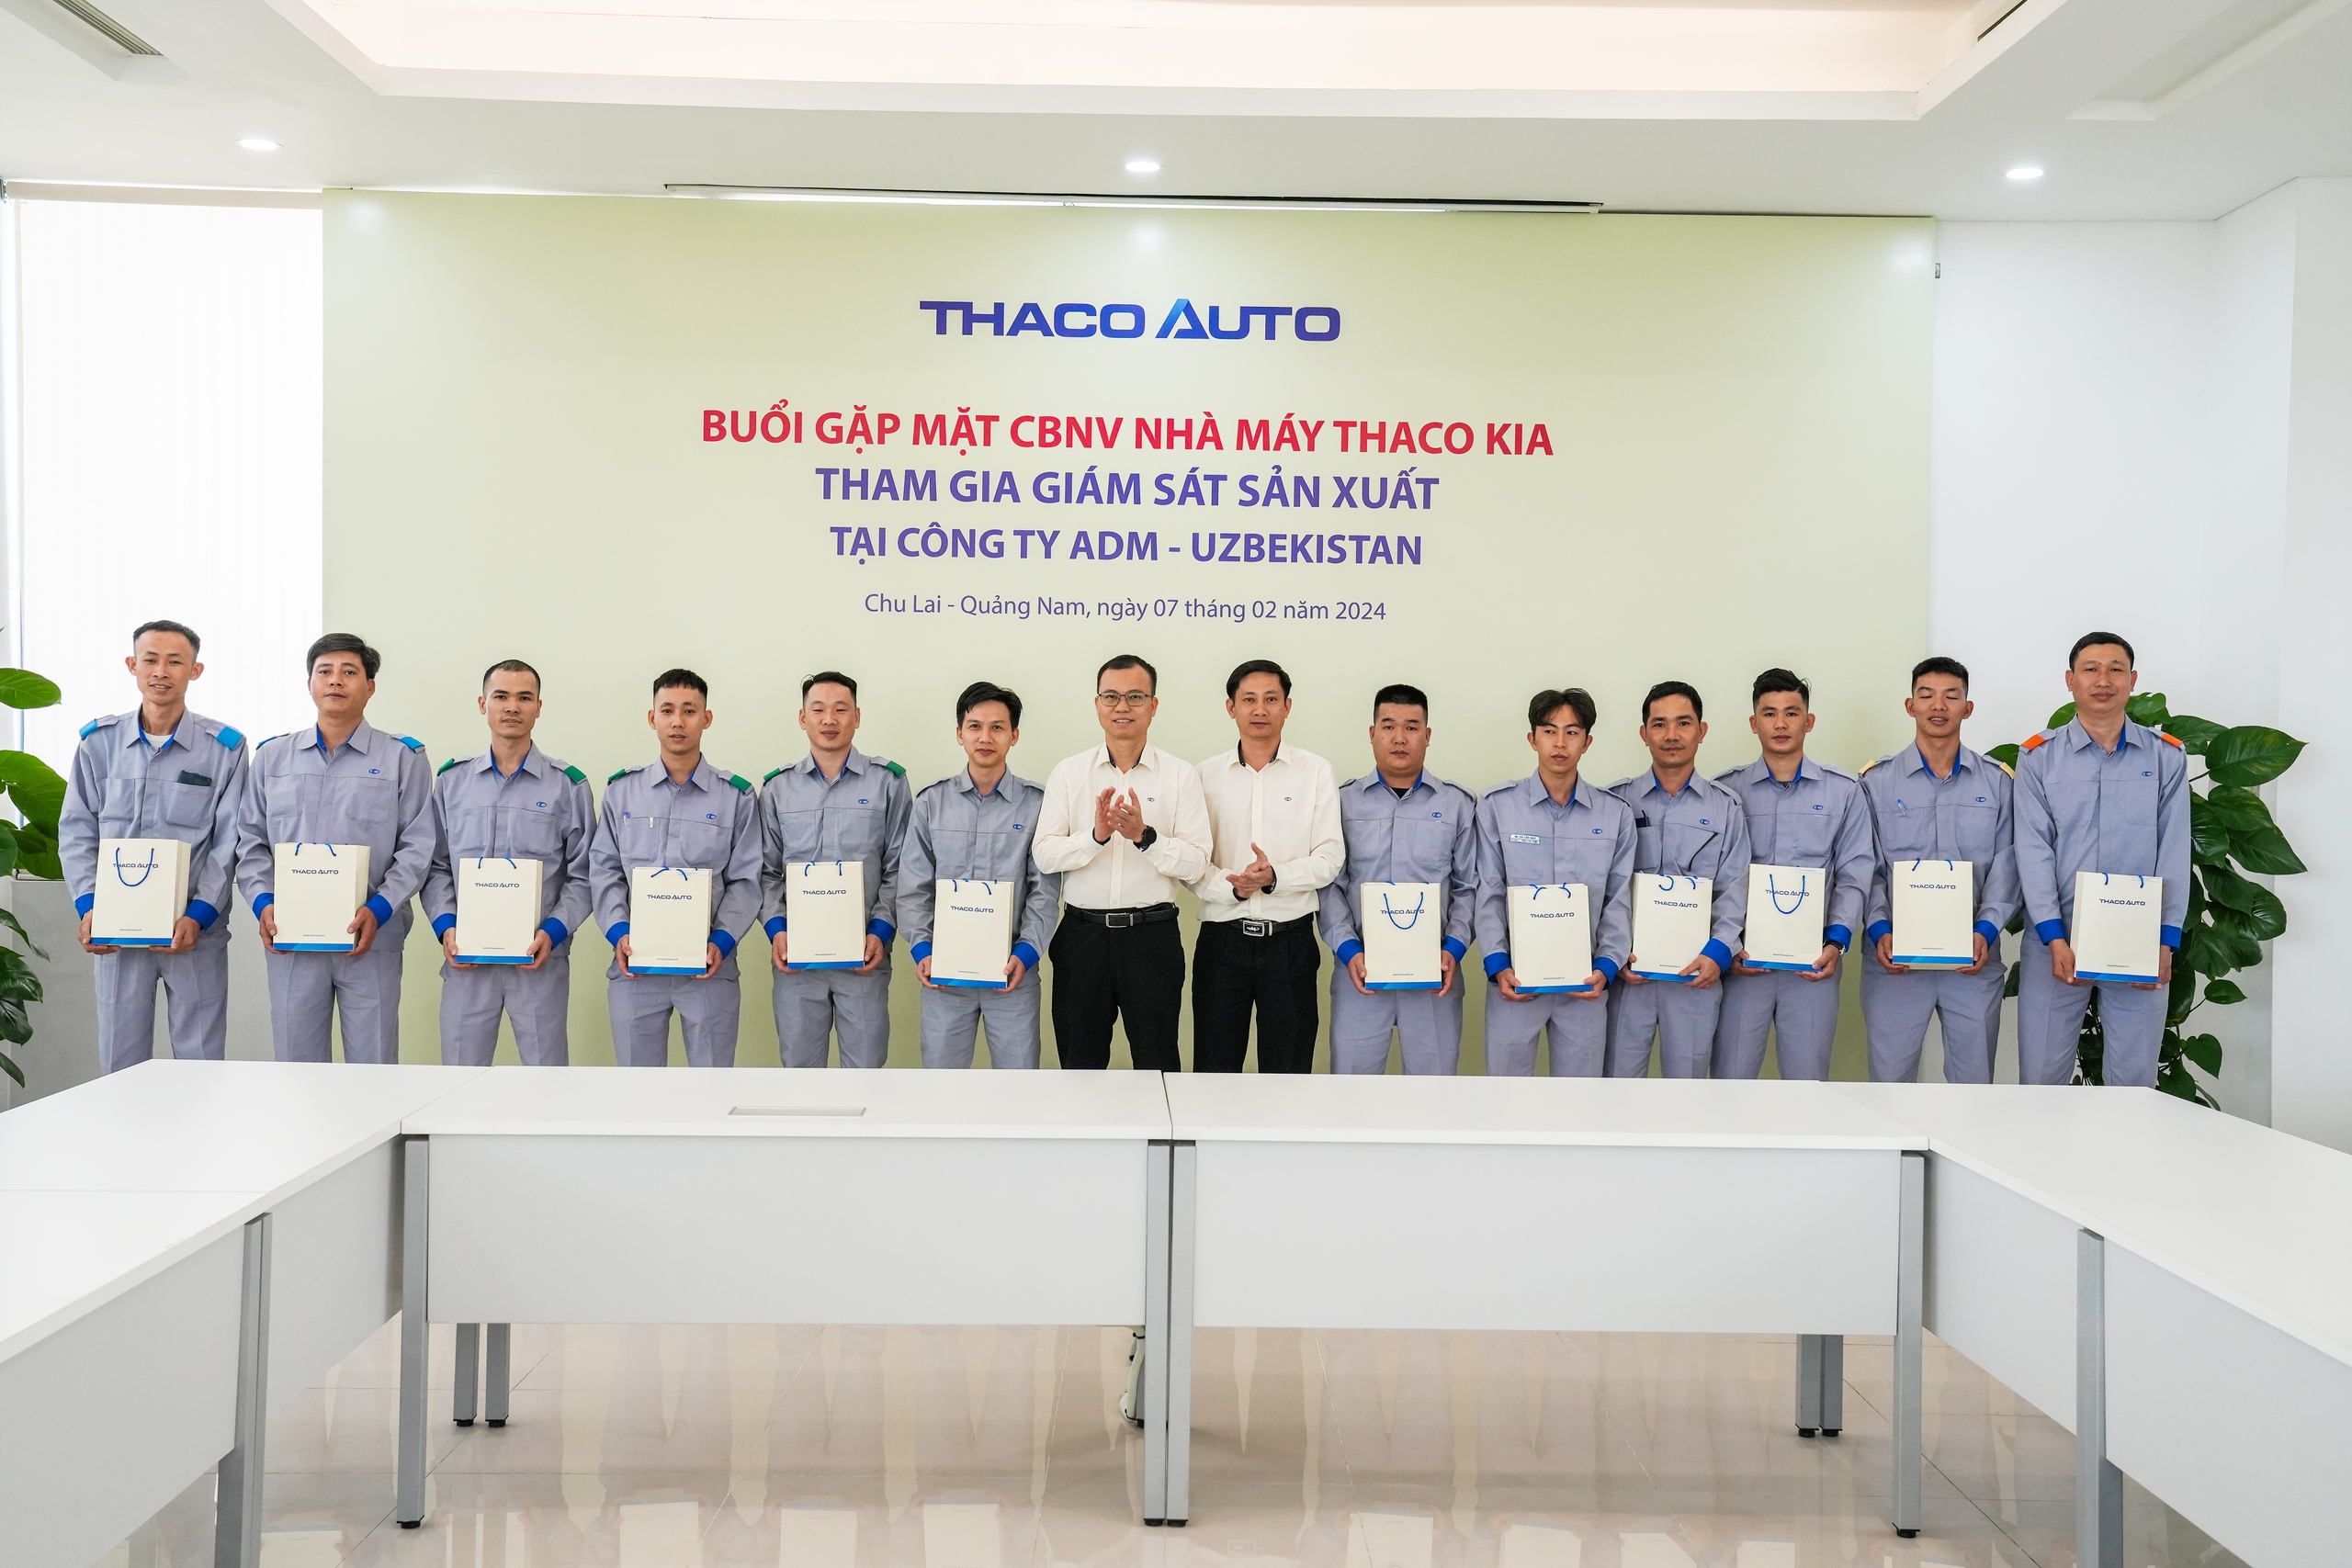 Nhà máy THACO KIA tham gia giám sát sản xuất xe Kia Sonet tại Uzbekistan
- Ảnh 6.